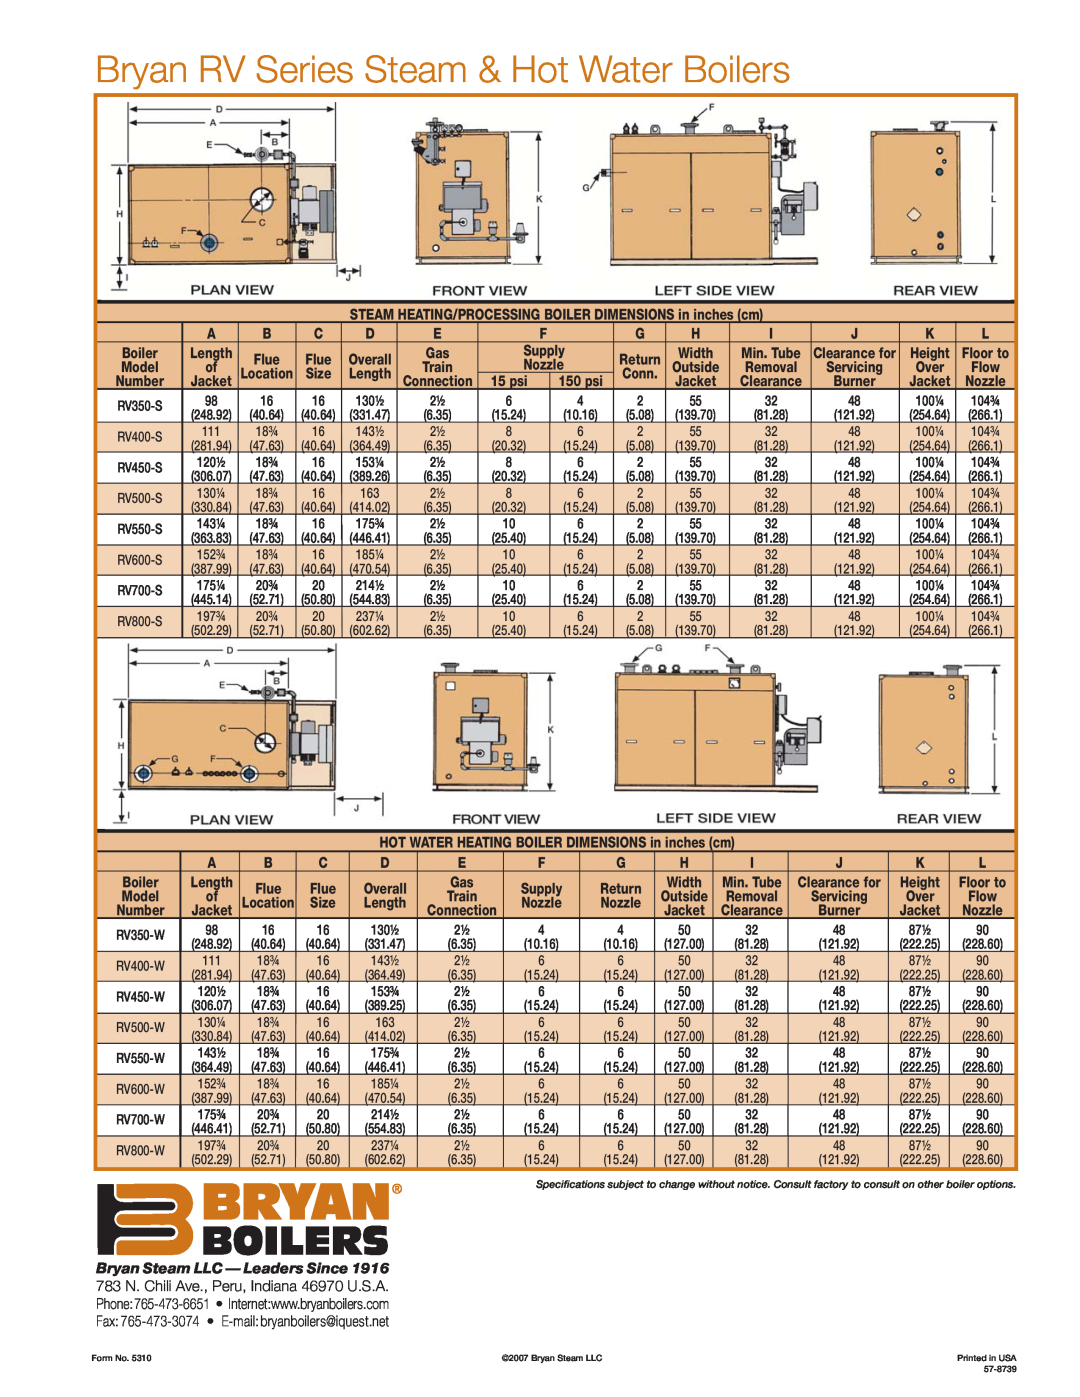 Bryan Boilers manual Bryan RV Series Steam & Hot Water Boilers, Bryan Steam LLC - Leaders Since 